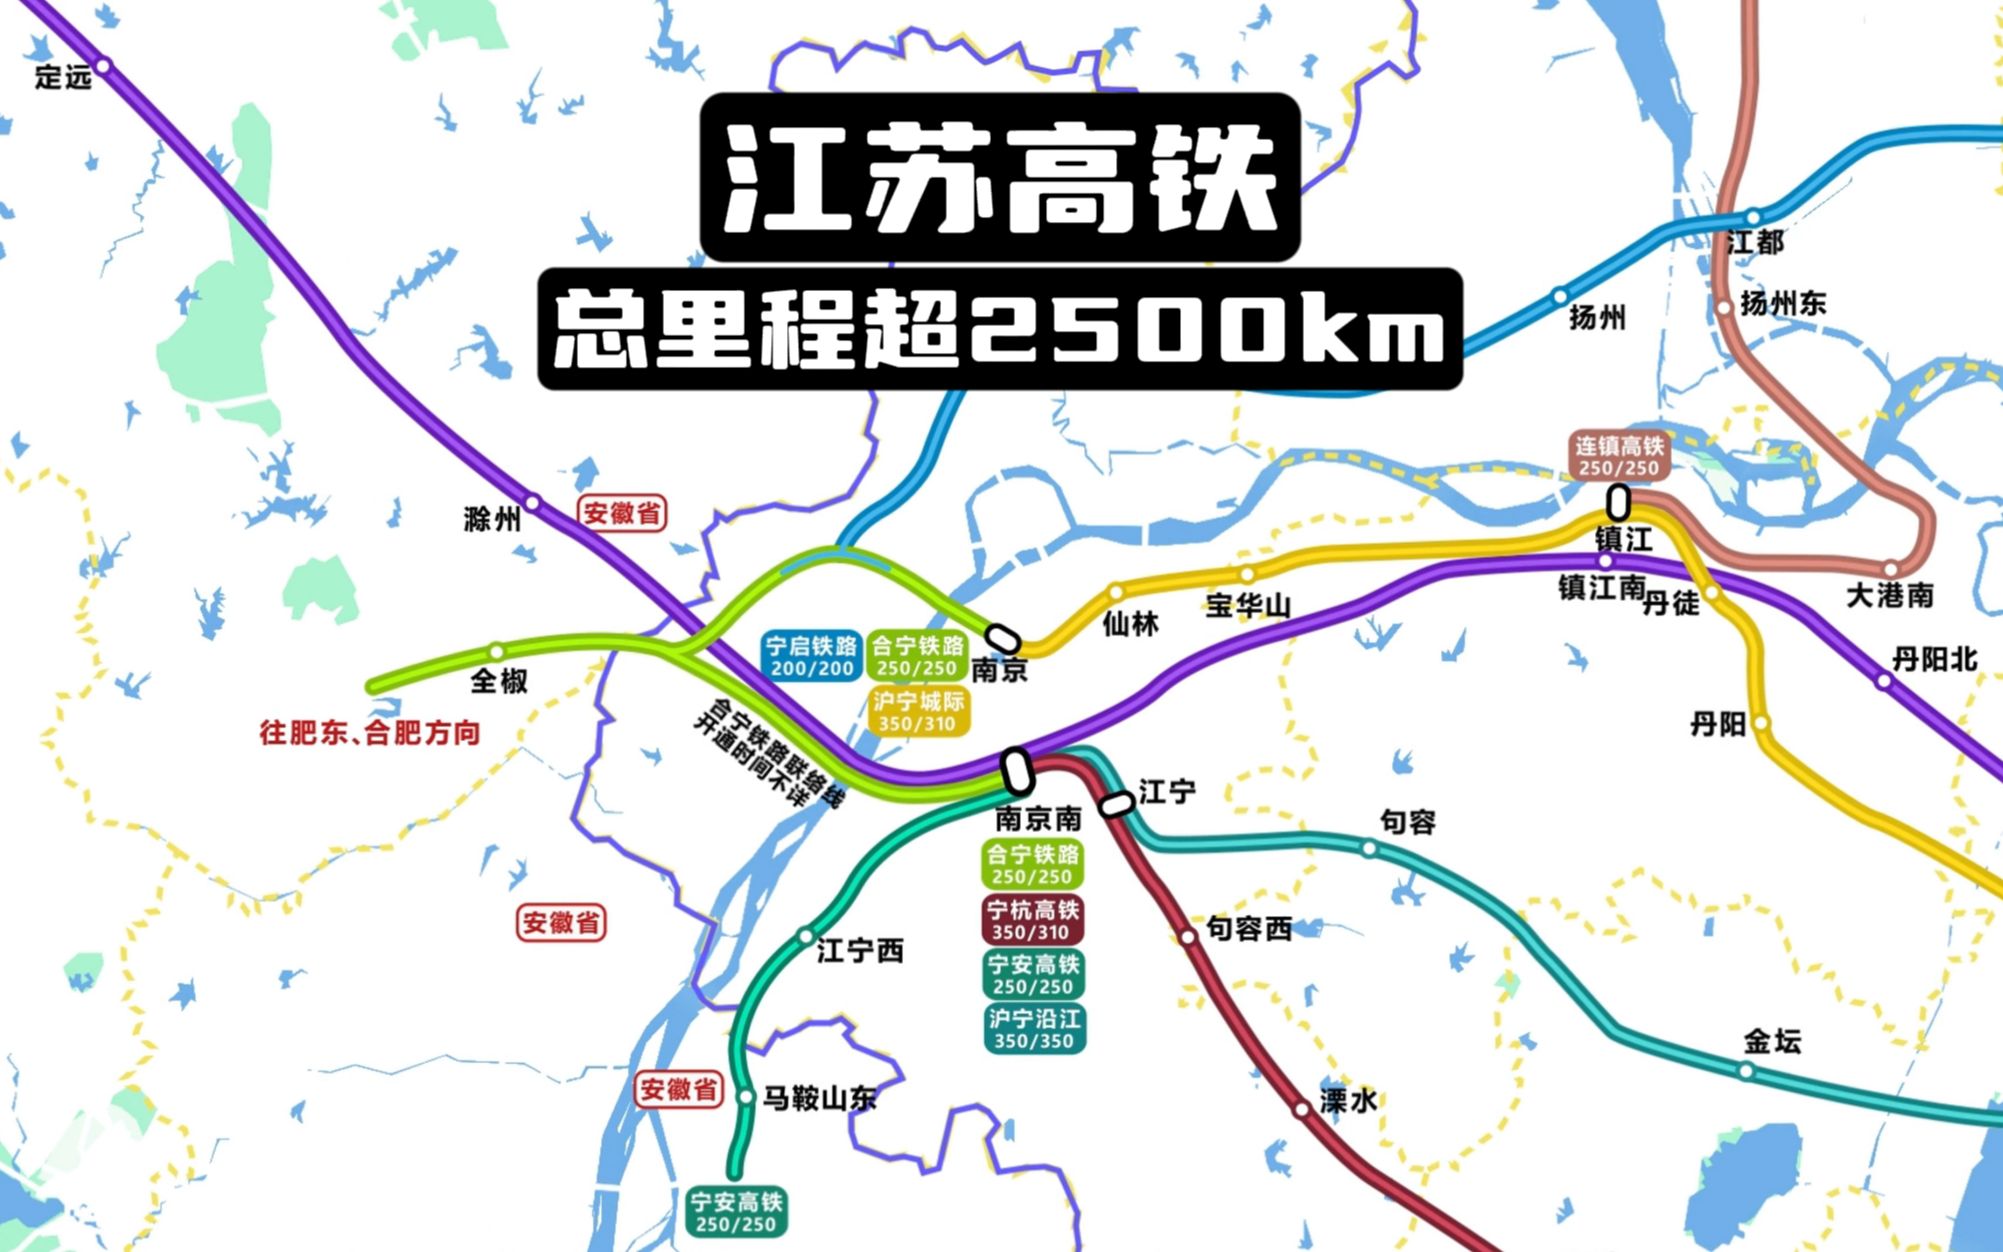 【江苏高铁】总里程超2500公里!